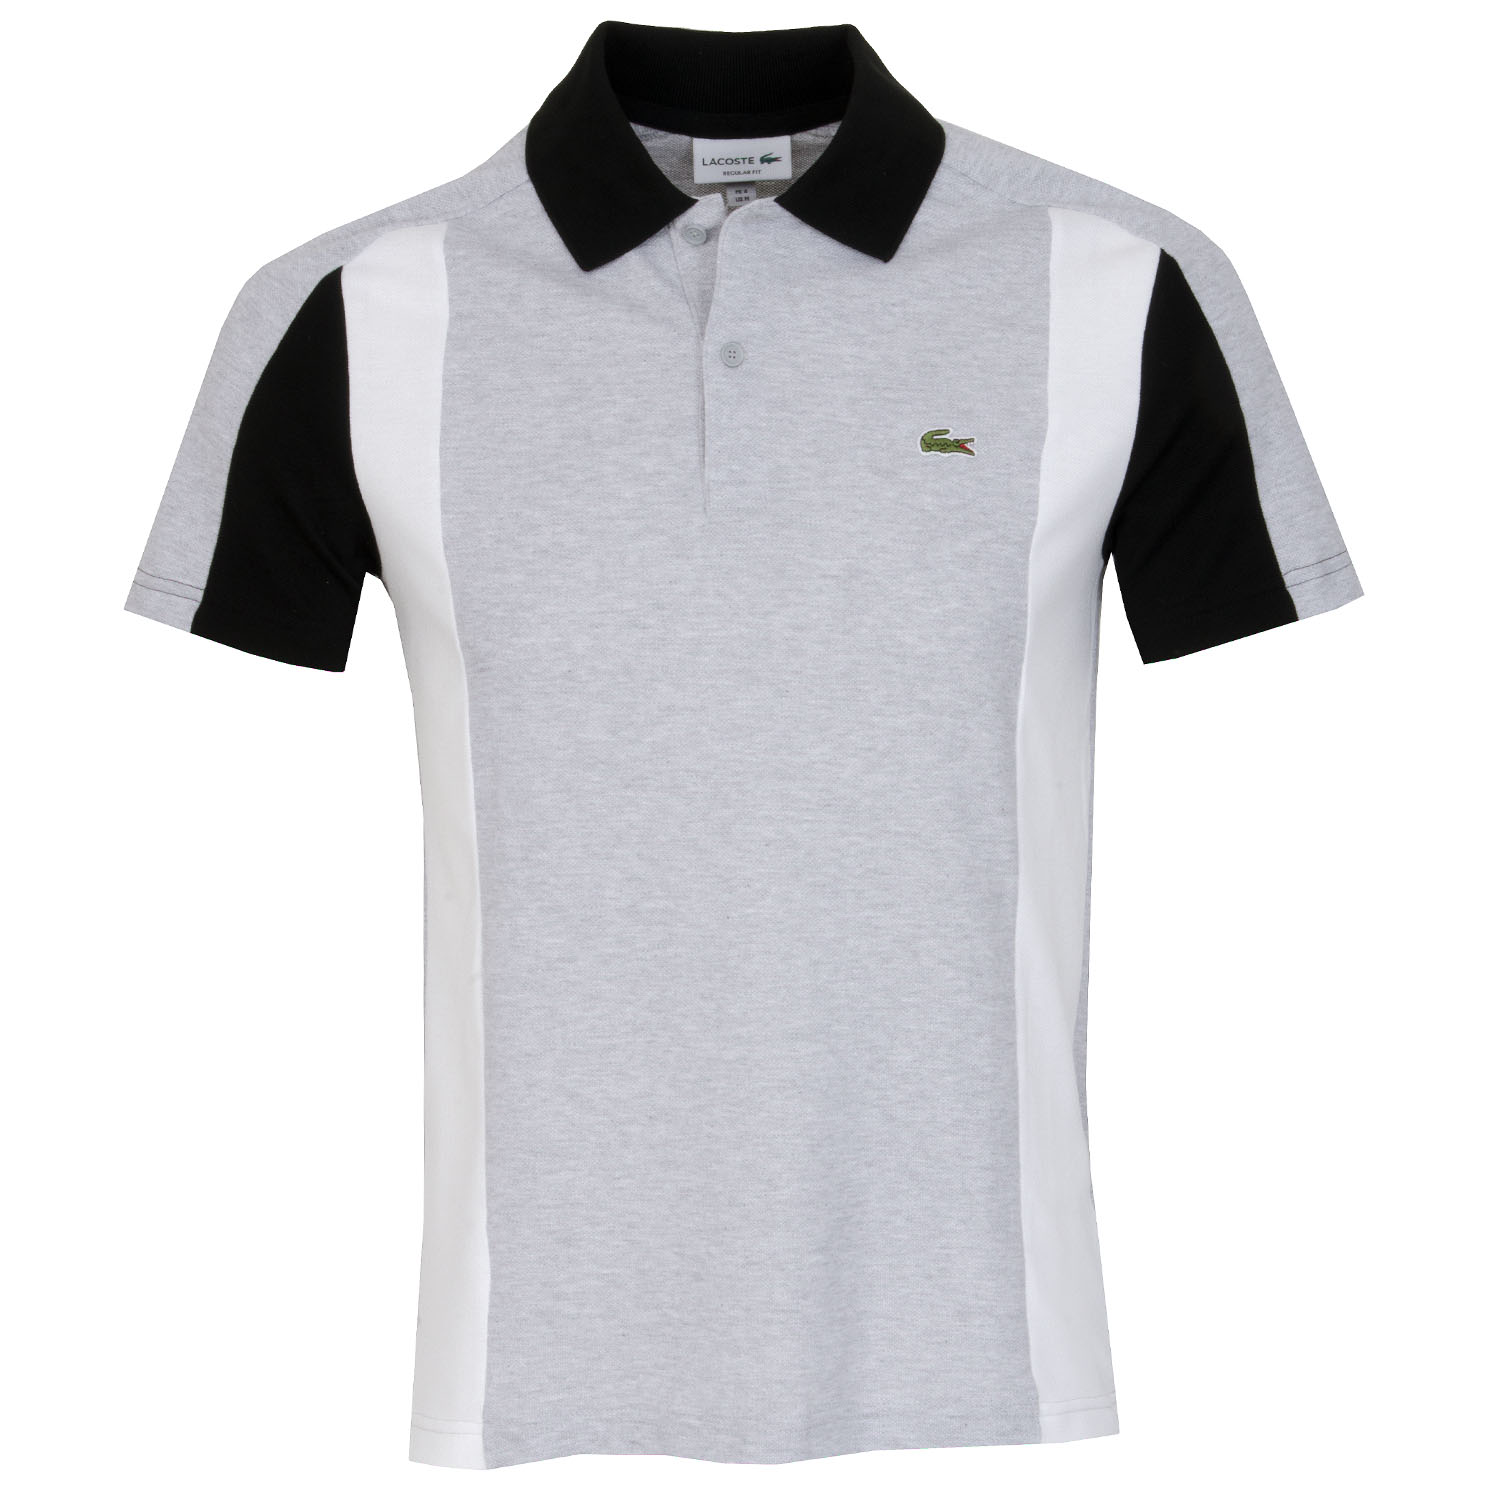 Lacoste Golf Polo Shirt